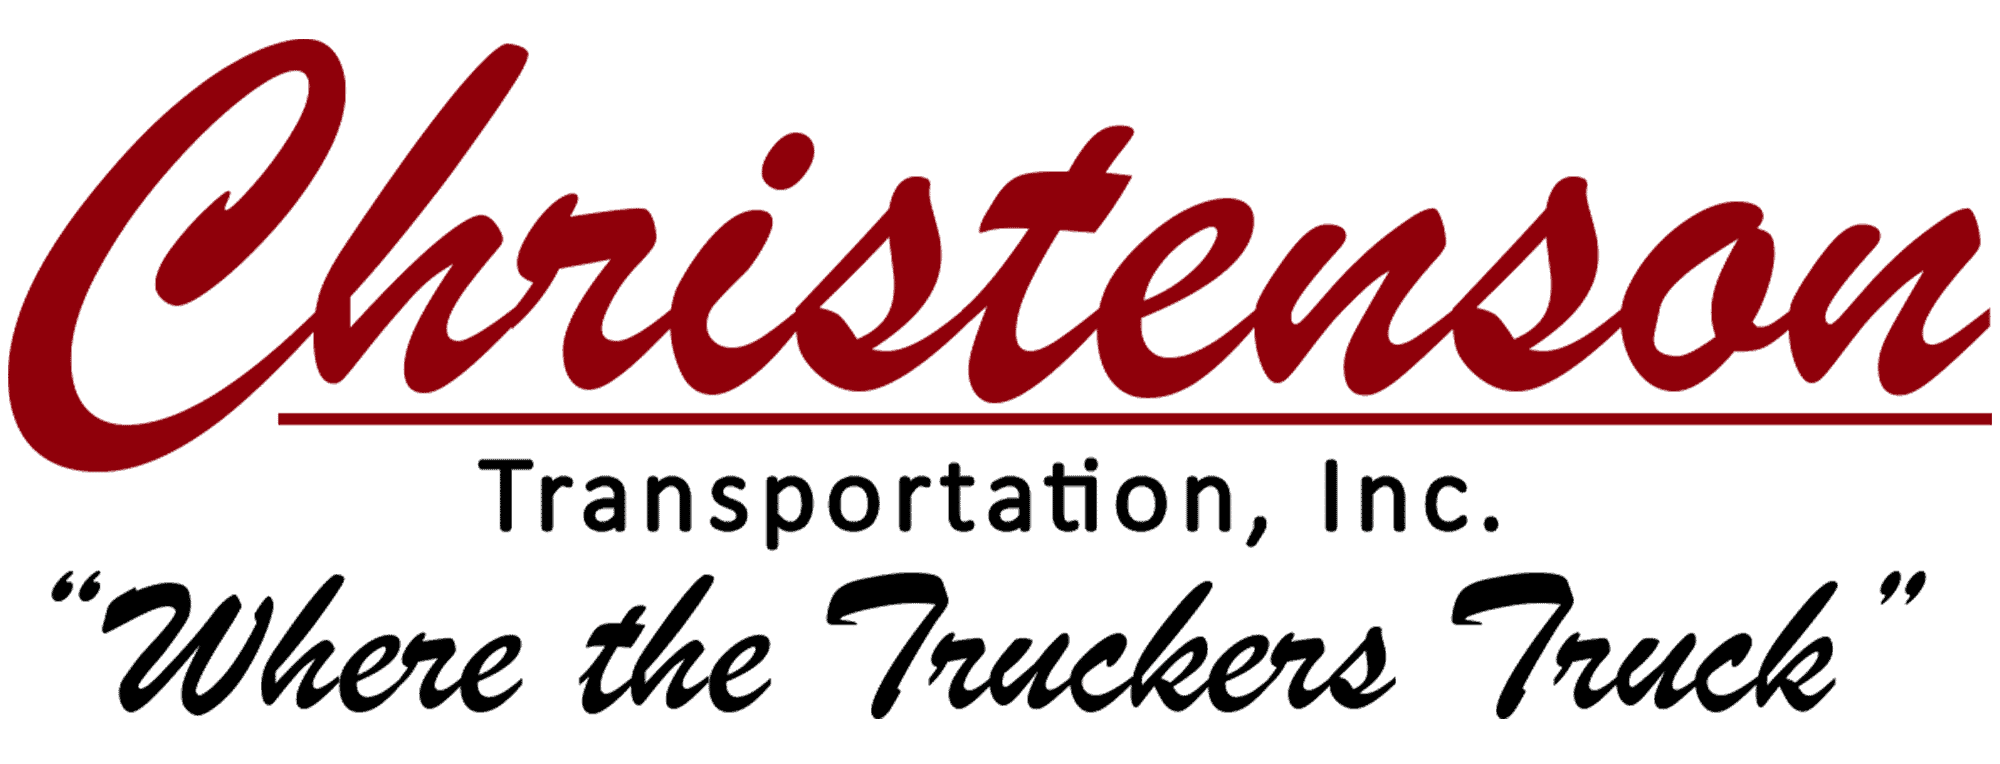 Christenson Transportation